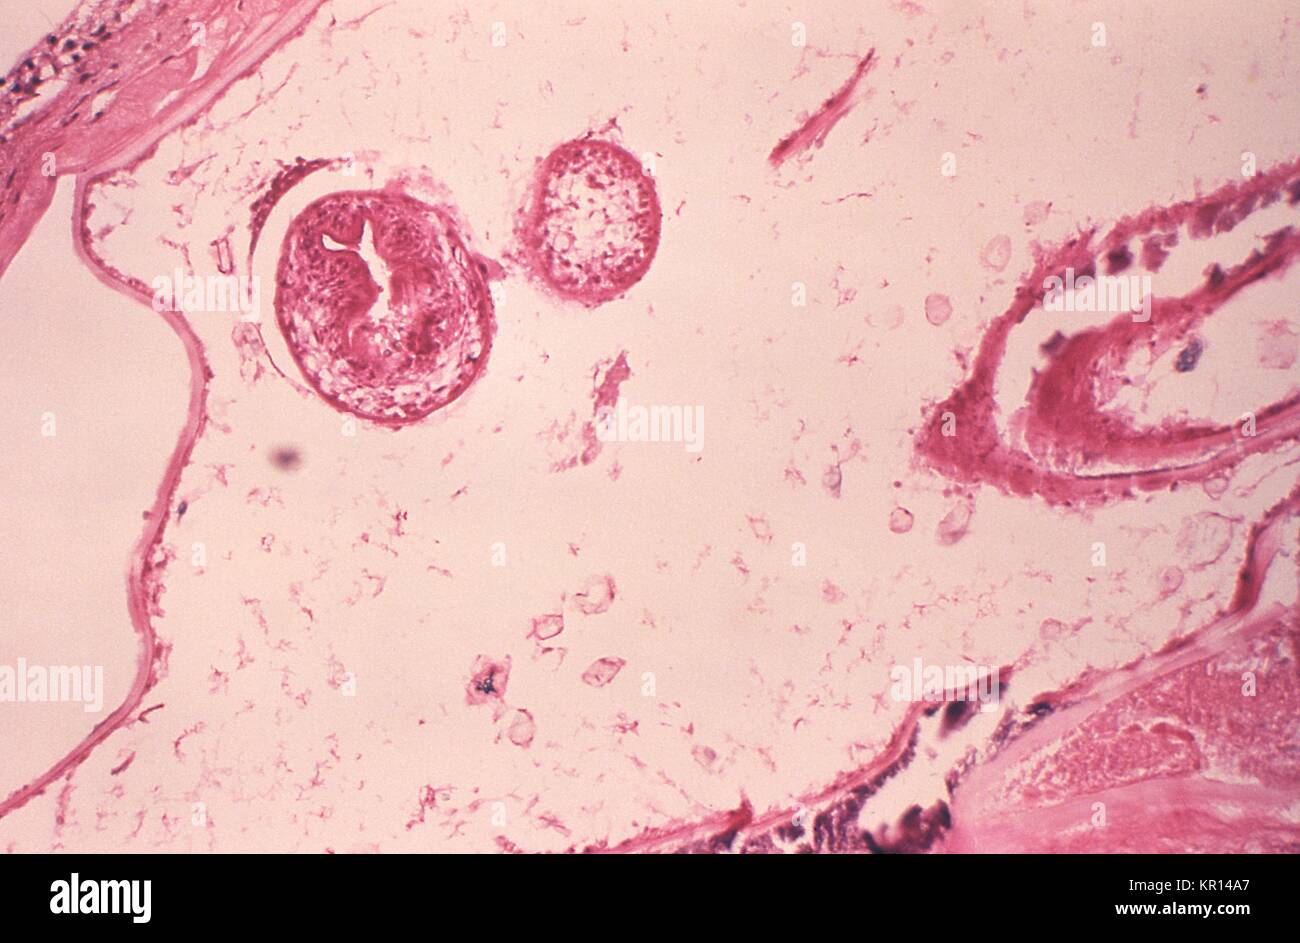 Esta micrografía es de una lesión de larvas en un vole experimentalmente infectados con el parásito Echinococcus multilocularis, 1978. La etapa larval de la microscópica tenia Echinococcus multilocularis es uno de los agentes causales de la Hidatidosis alveolar (AHD). La infección en humanos causa tumores parasitaria para formar principalmente en el hígado, pero también puede aparecer en otros órganos. Imagen cortesía de CDC/Dr. Peter Schantz. Foto de stock